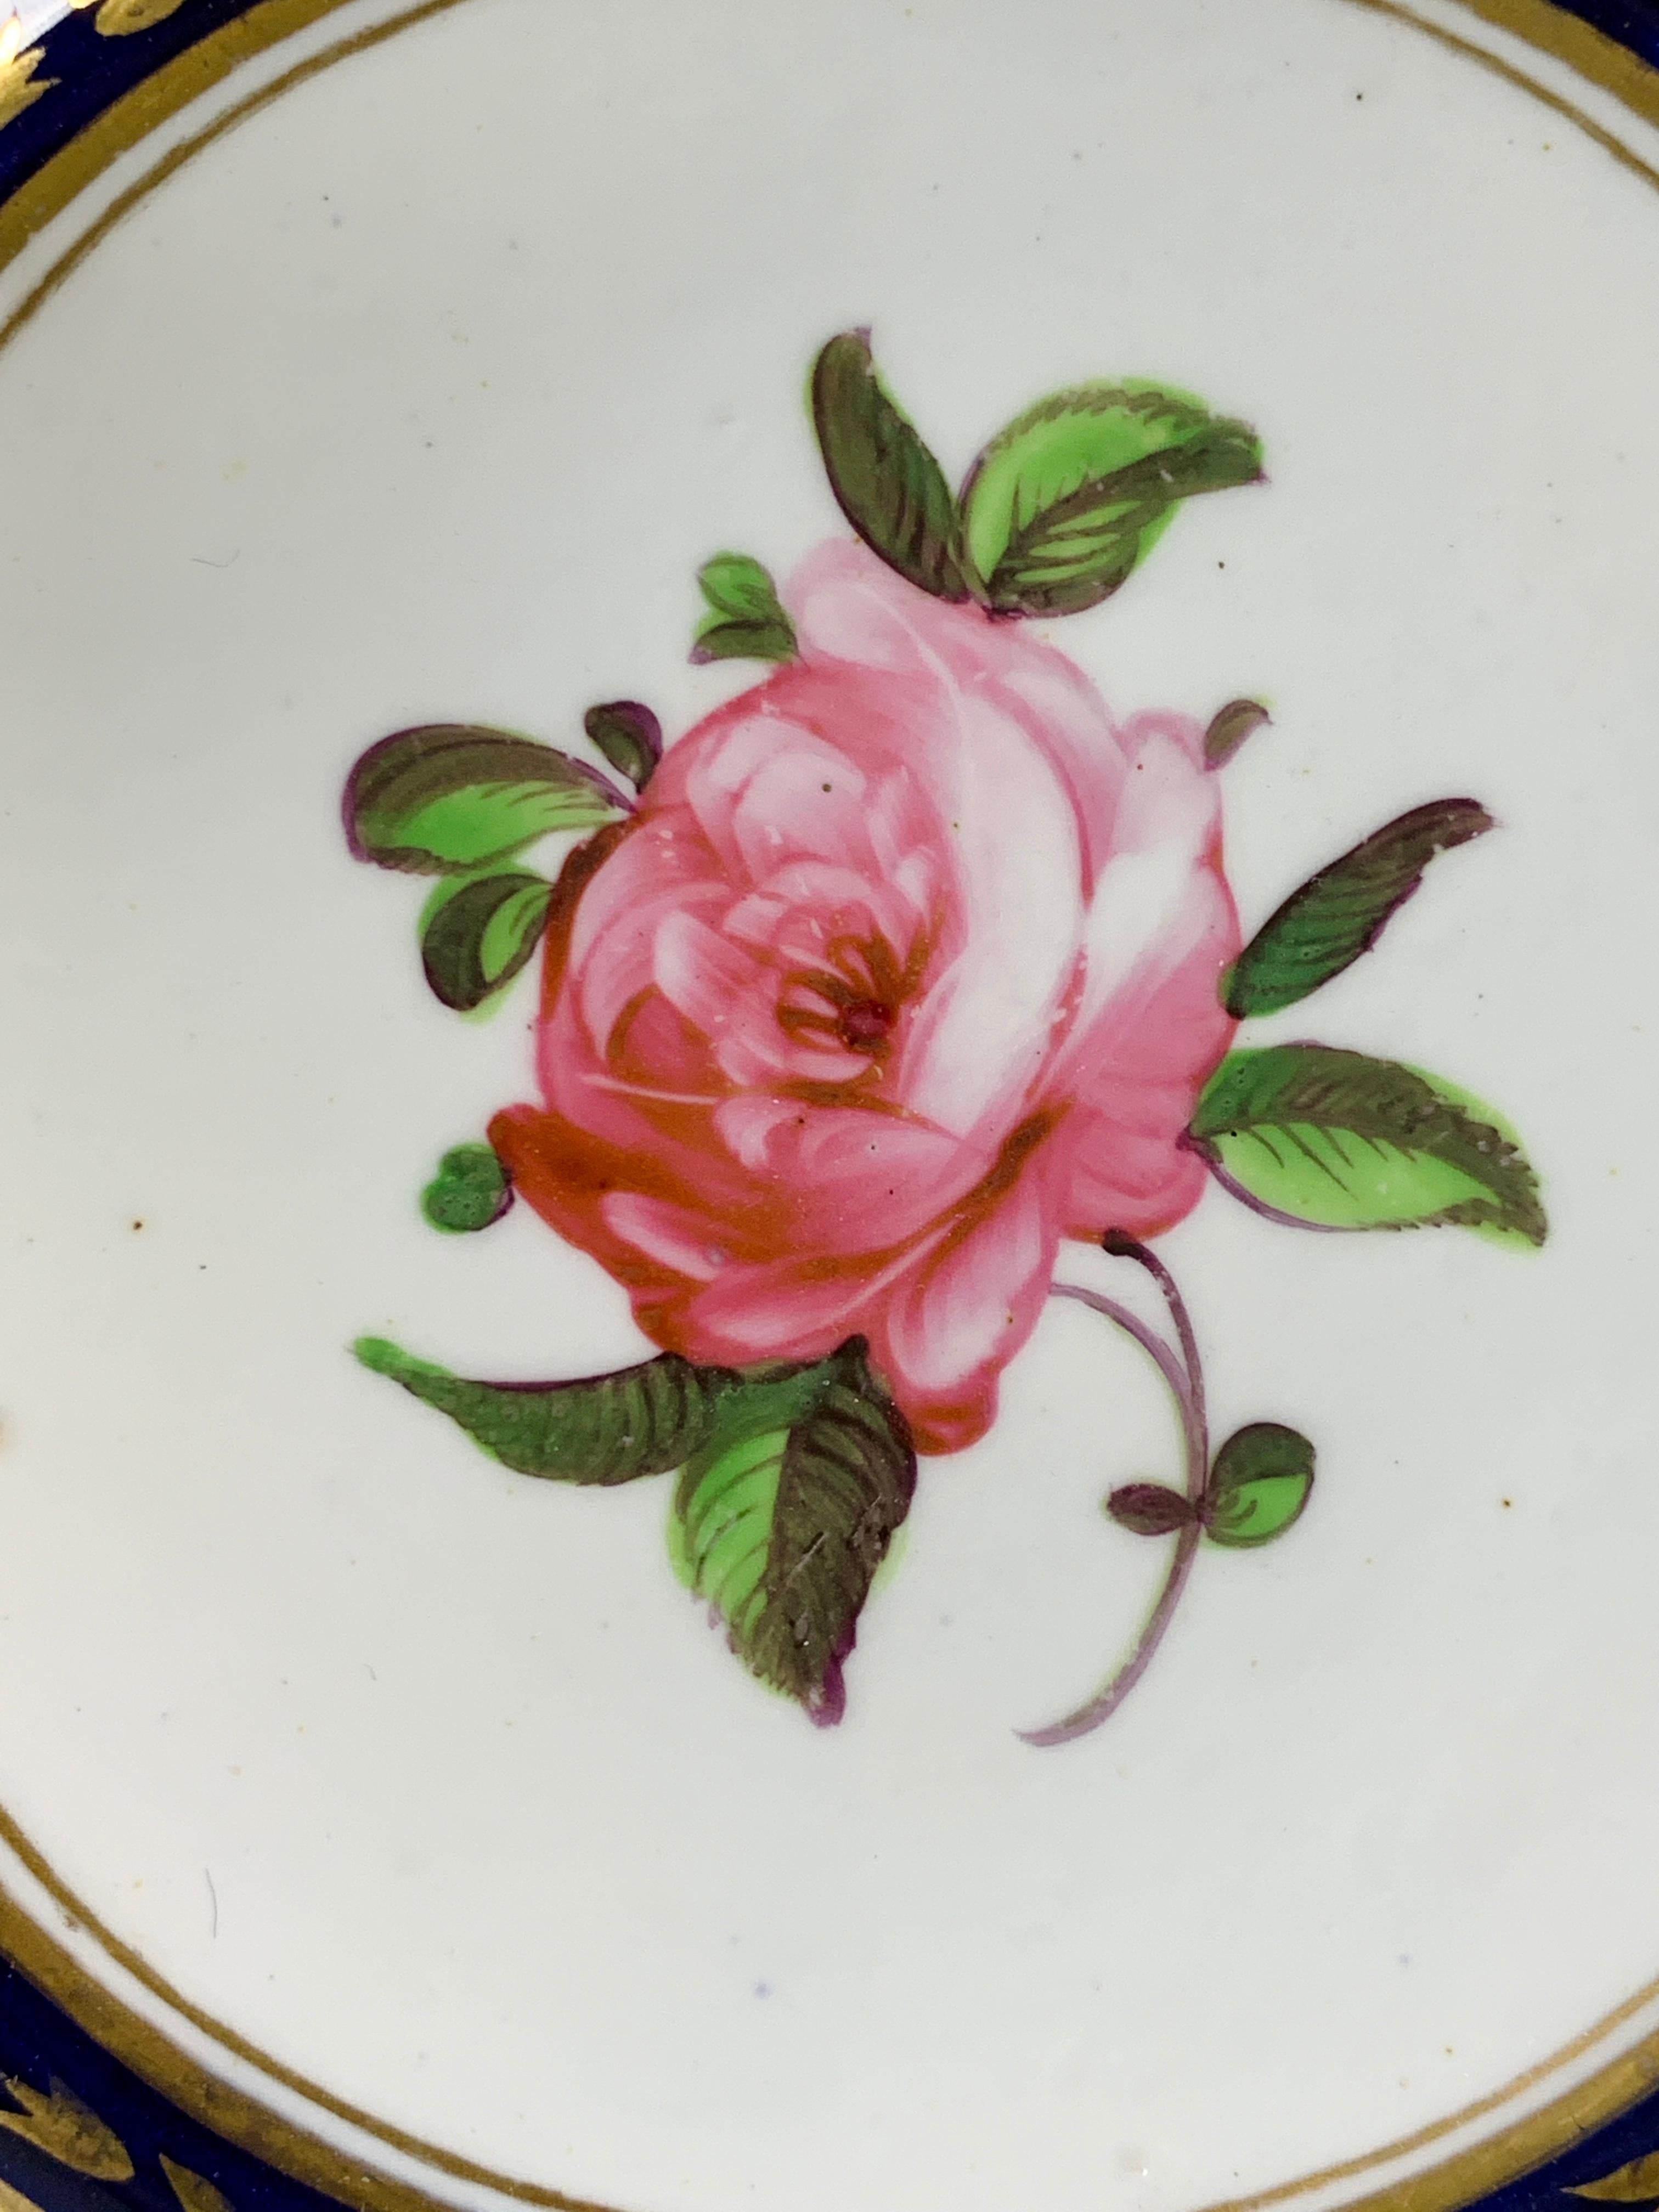 Eine entzückende englische Porzellanschale aus der Zeit um 1820, handbemalt mit exquisiten Blumen auf strahlend weißem Porzellan.
In der Mitte befindet sich eine schöne rosa Rose. Andere Rosen, Vergissmeinnicht und andere Blumen mit Ranken umgeben